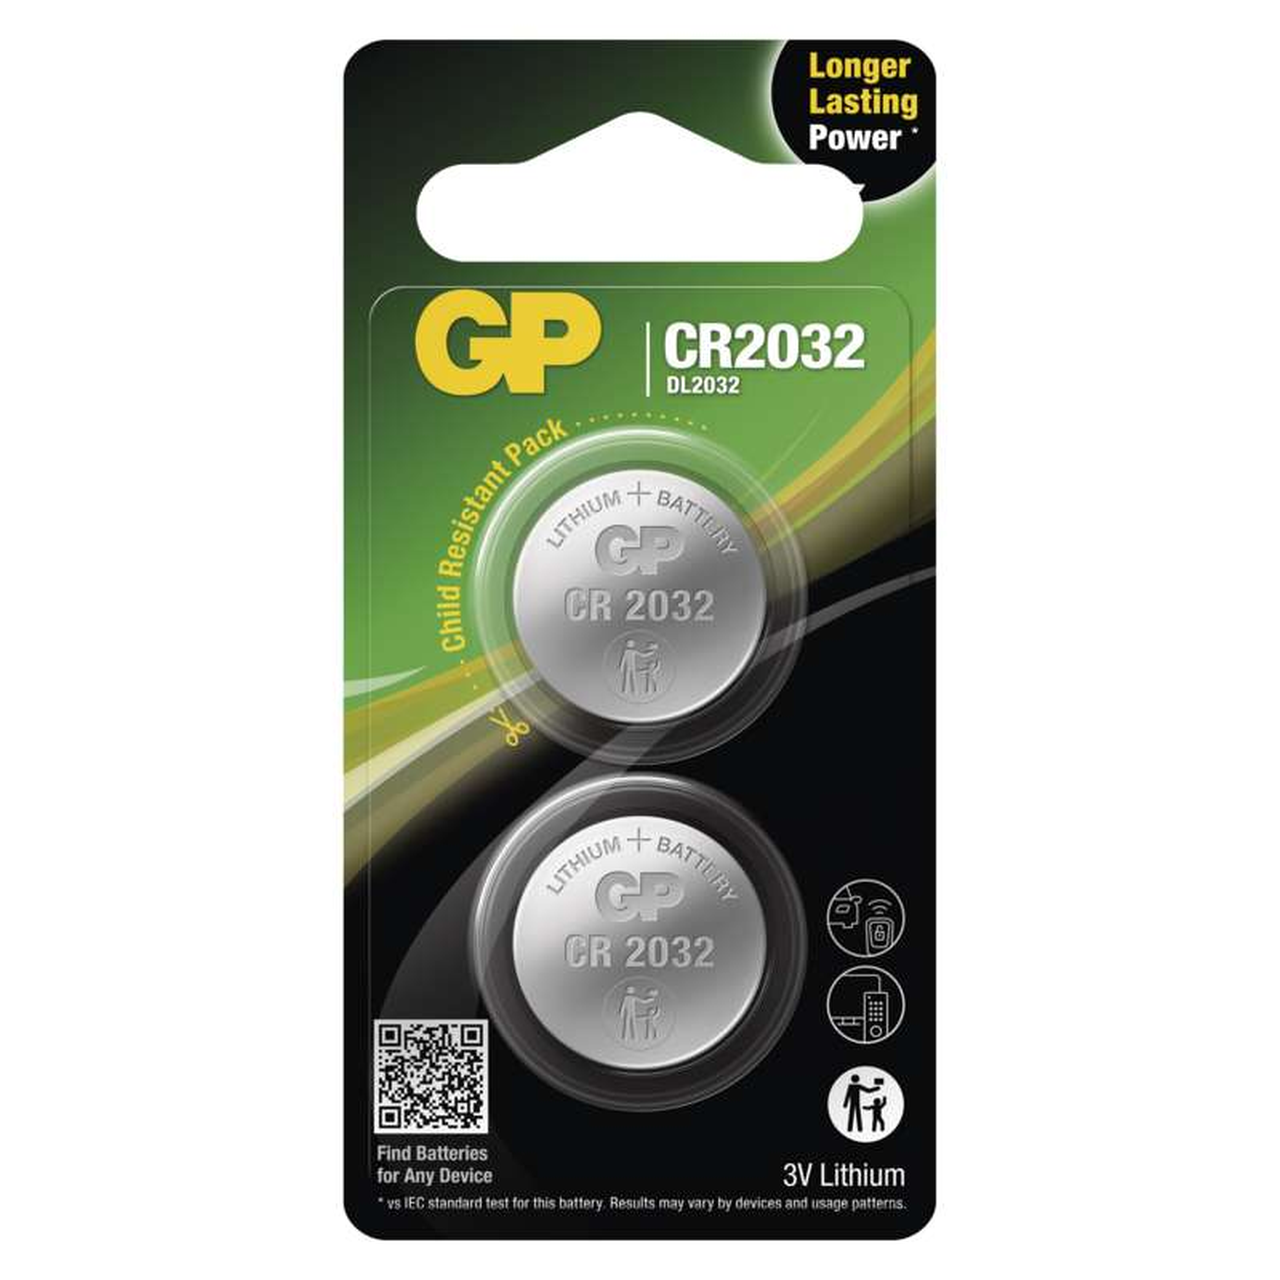 EMOS Lithiová gombíková batéria GP CR2032, 2ks B15323